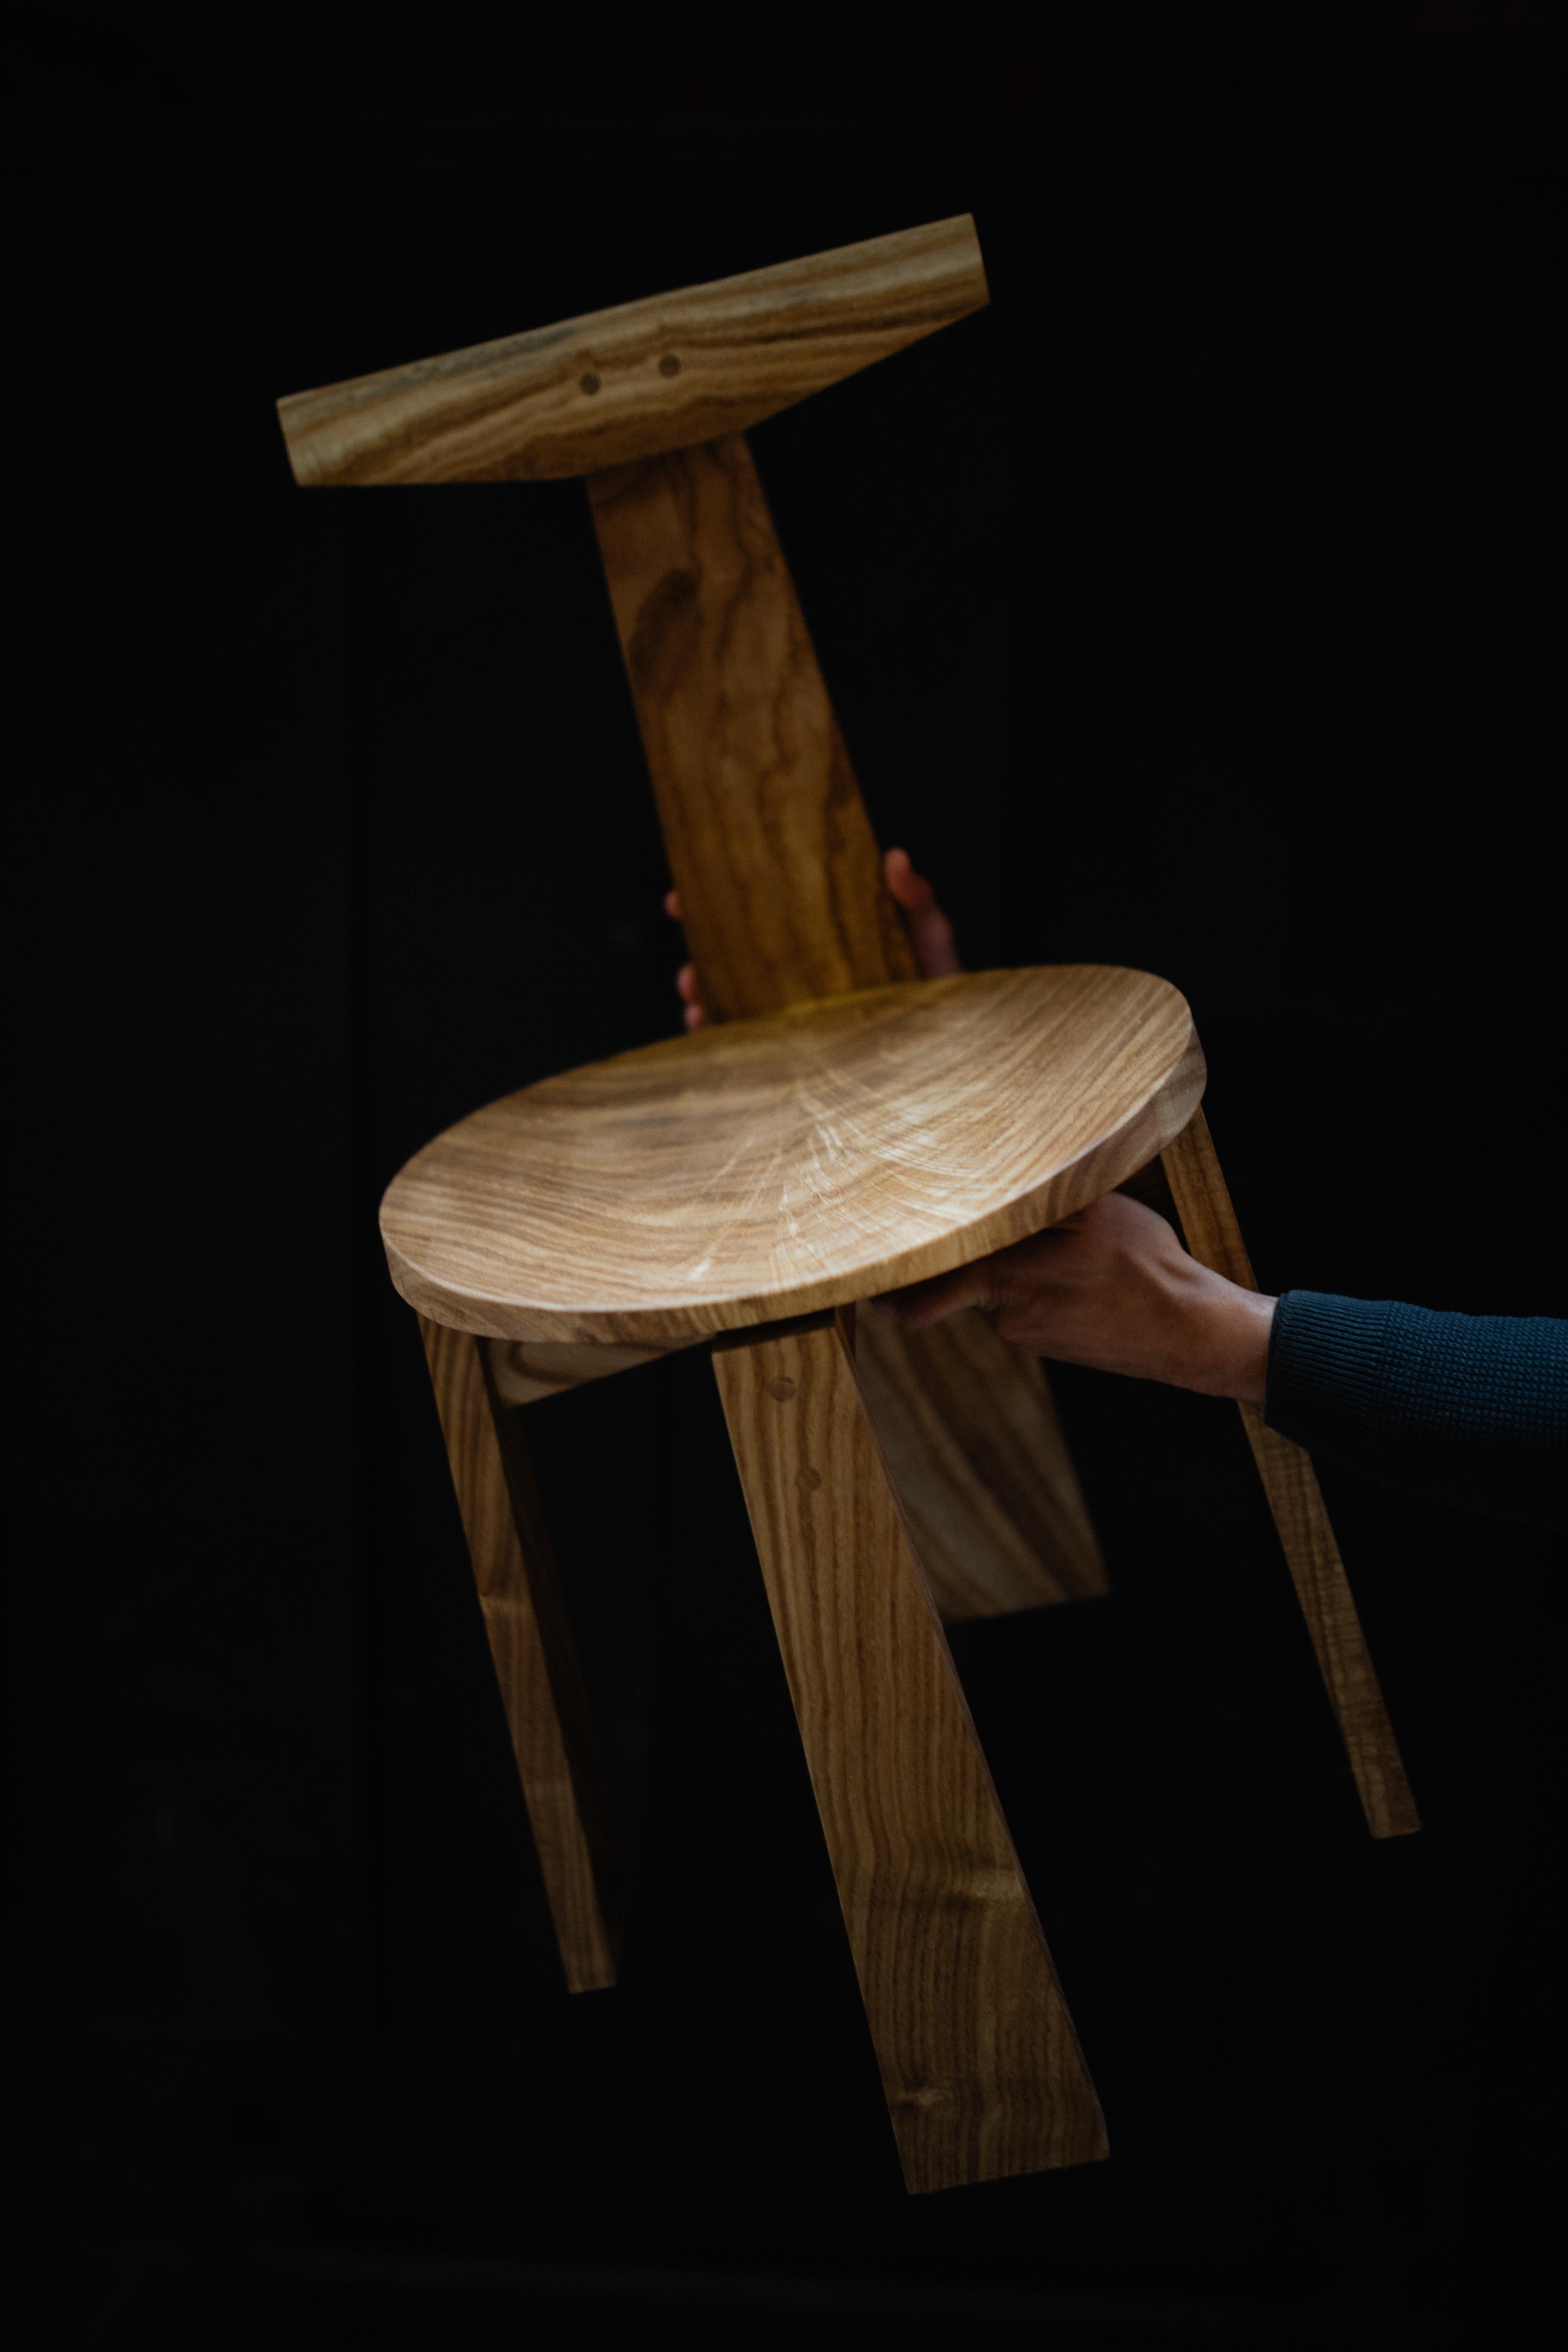 La chaise de salle à manger Urithi est une conception originale, fabriquée à la main avec du bois dur pour être une pièce d'art fonctionnelle. La chaise a été conçue à partir de l'arrière, car c'est la partie que l'on voit le plus souvent pendant la